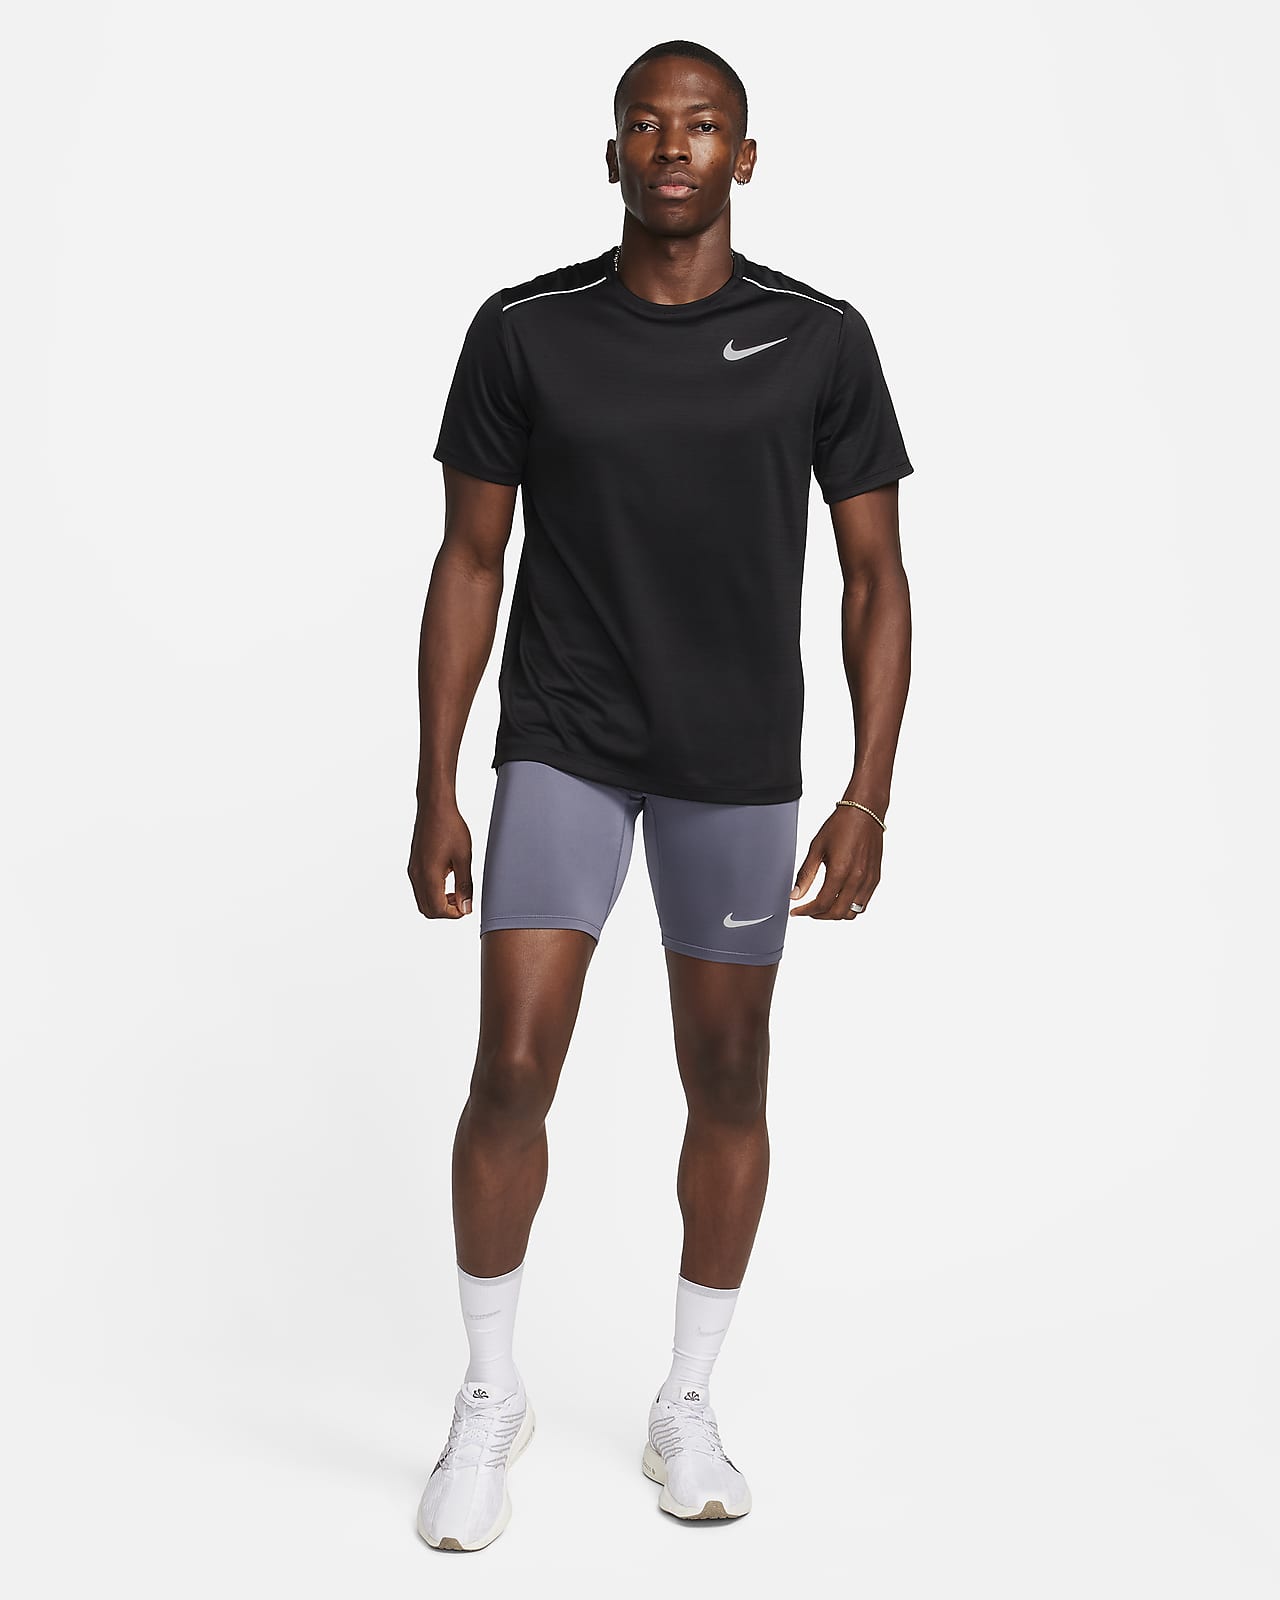 Nike USATF Men's DRI-FIT Fast Half-Tights